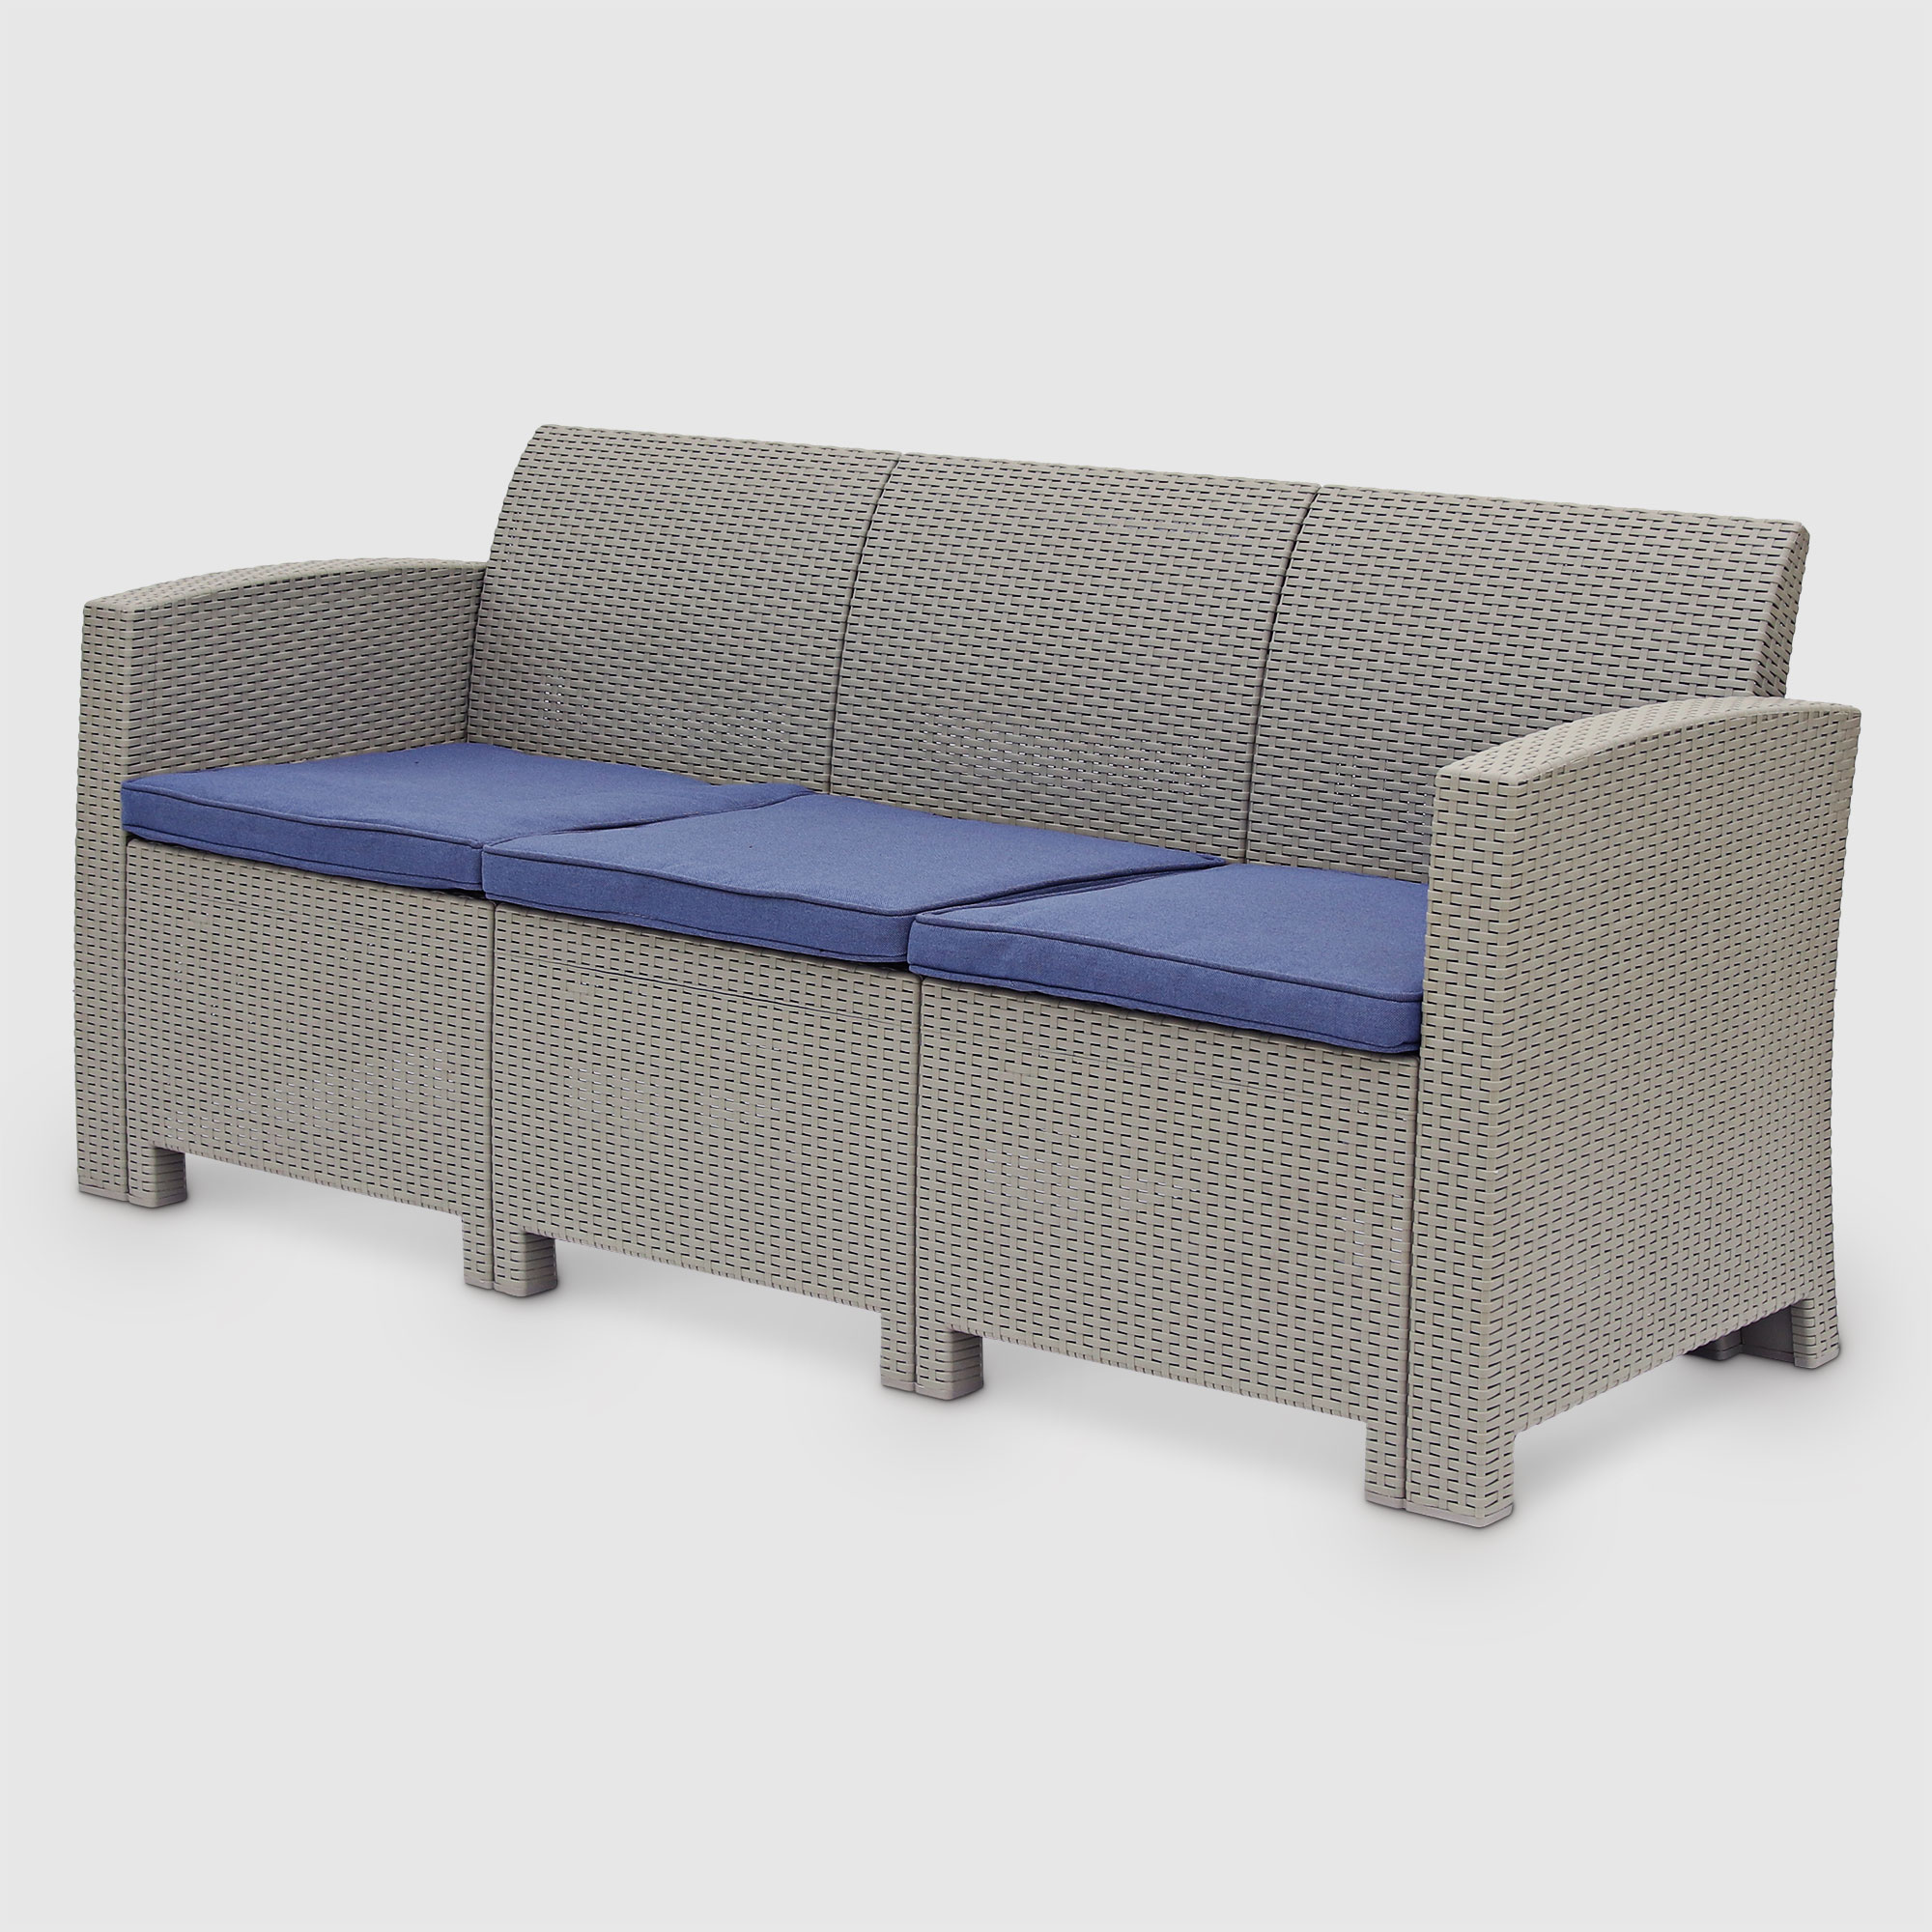 Комплект садовой мебели LF серый с синим из 4 пердметов, цвет синий, размер 172х61х76 - фото 4